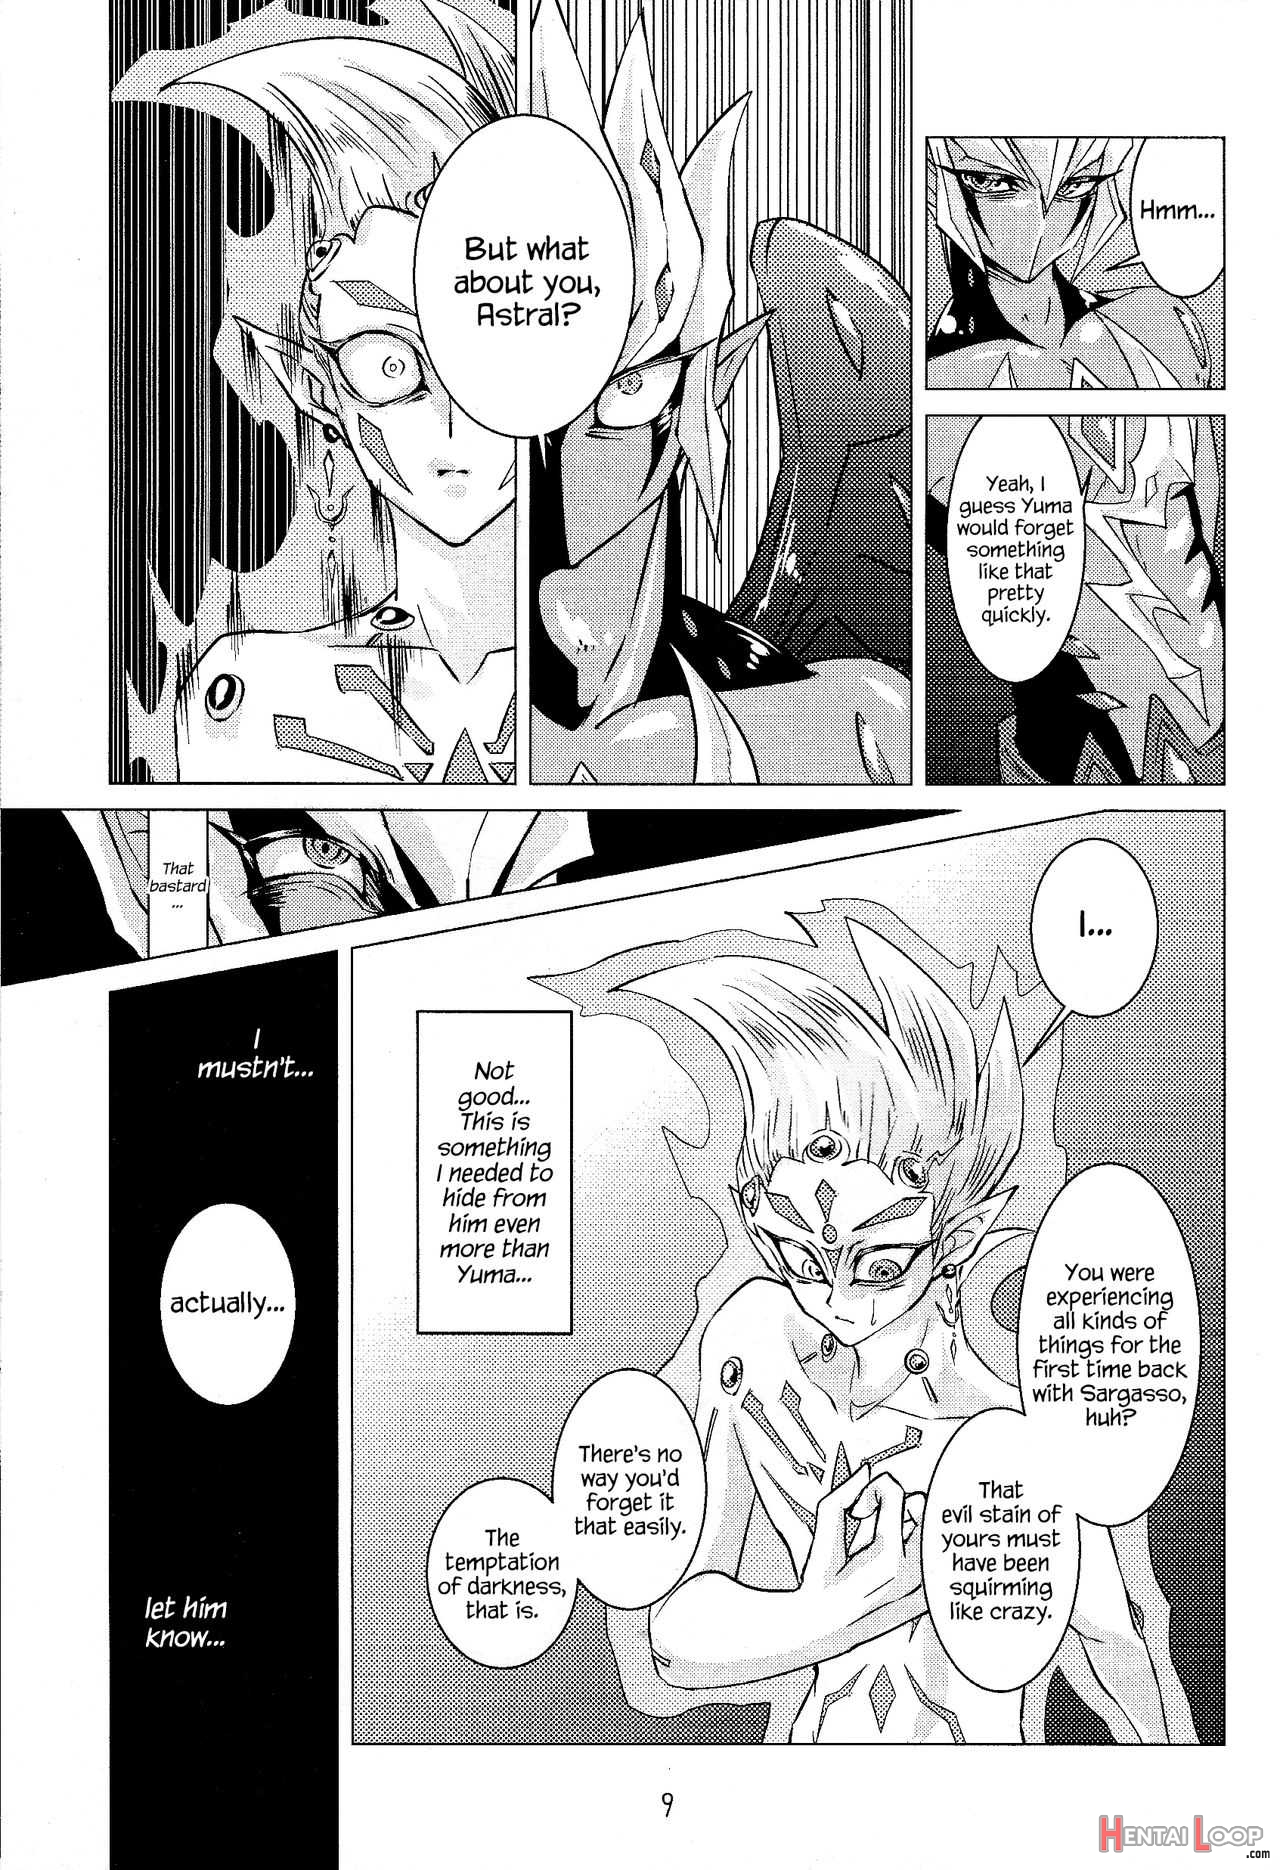 Shingetsu No Yoru Ni Wa Kare Ga Kuru page 10